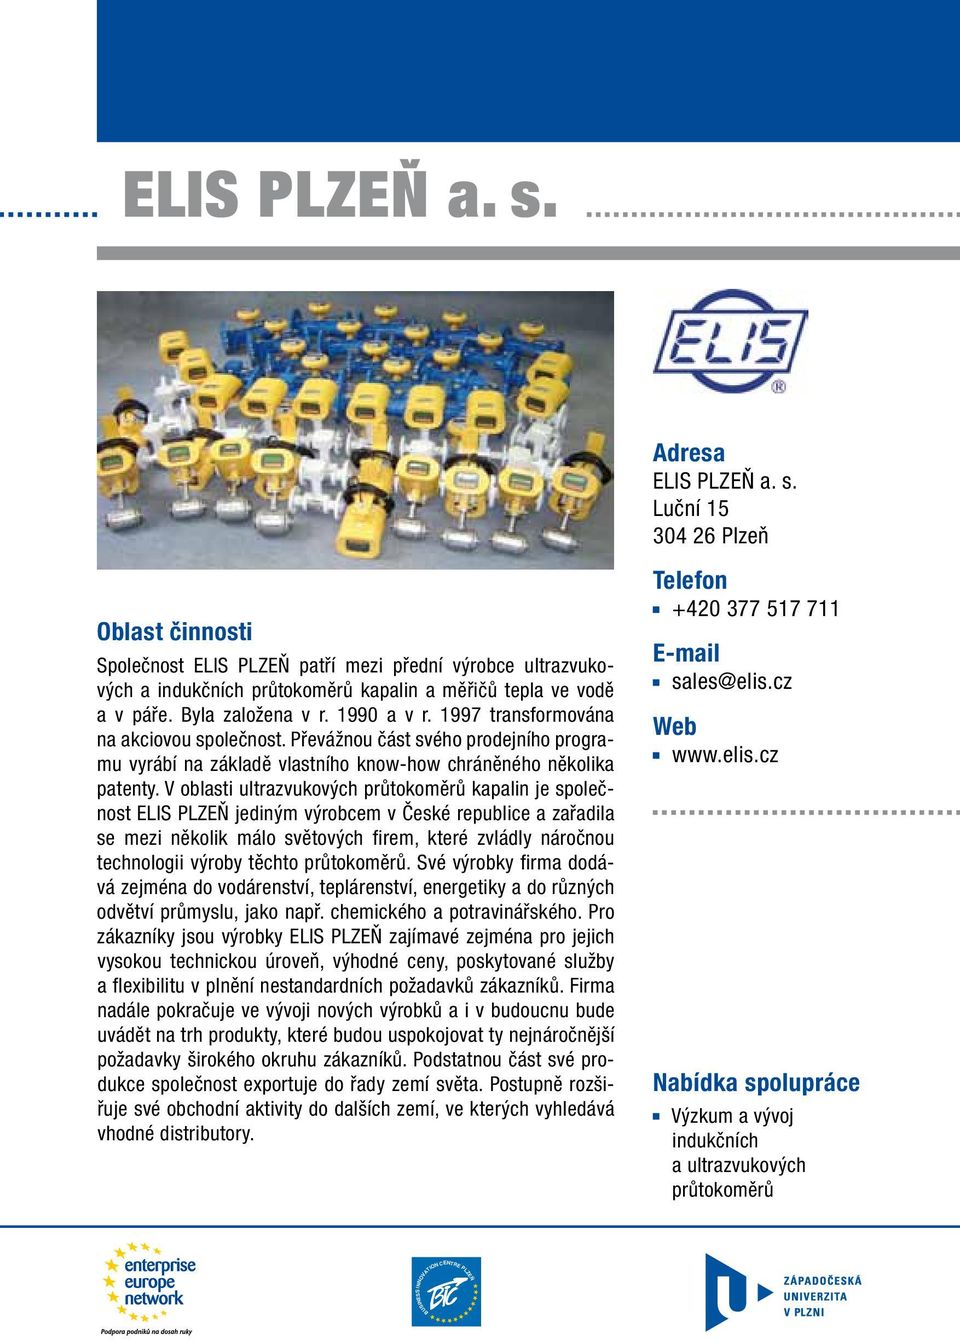 V oblasti ultrazvukových průtokoměrů kapalin je společnost ELIS PLZEŇ jediným výrobcem v České republice a zařadila se mezi několik málo světových firem, které zvládly náročnou technologii výroby